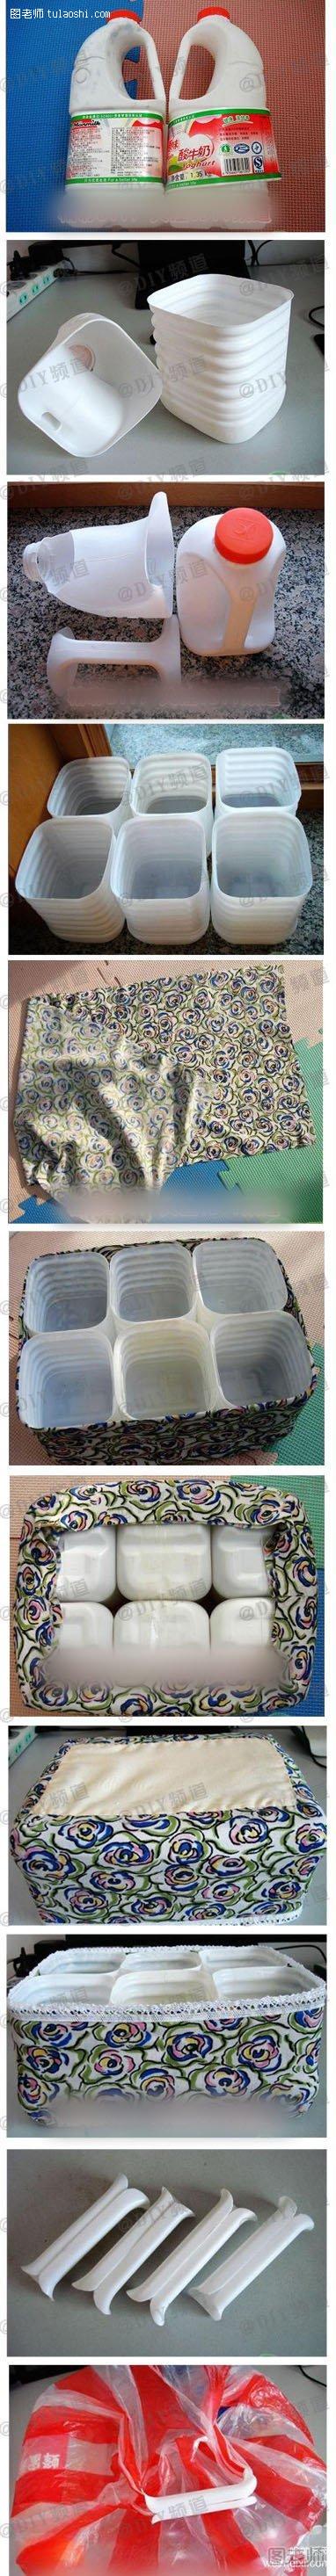 废旧牛奶塑料瓶手工制作创意收纳箱篮diy教程图解